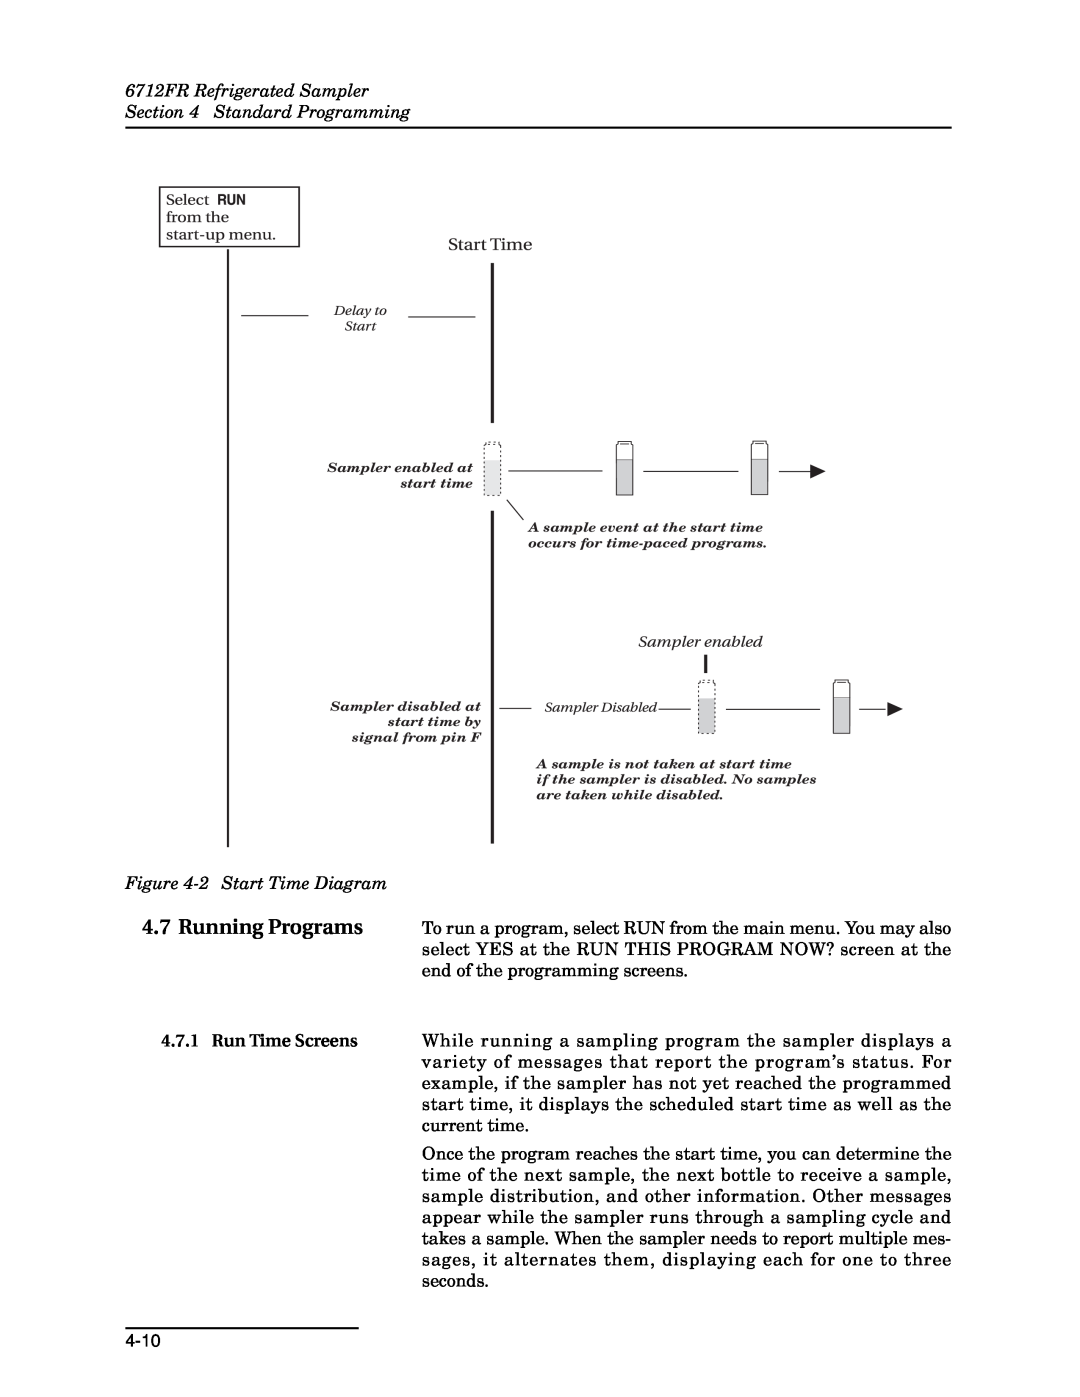 Teledyne manual 6712FR Refrigerated Sampler Standard Programming, 2 Start Time Diagram, Sampler enabled at start time 